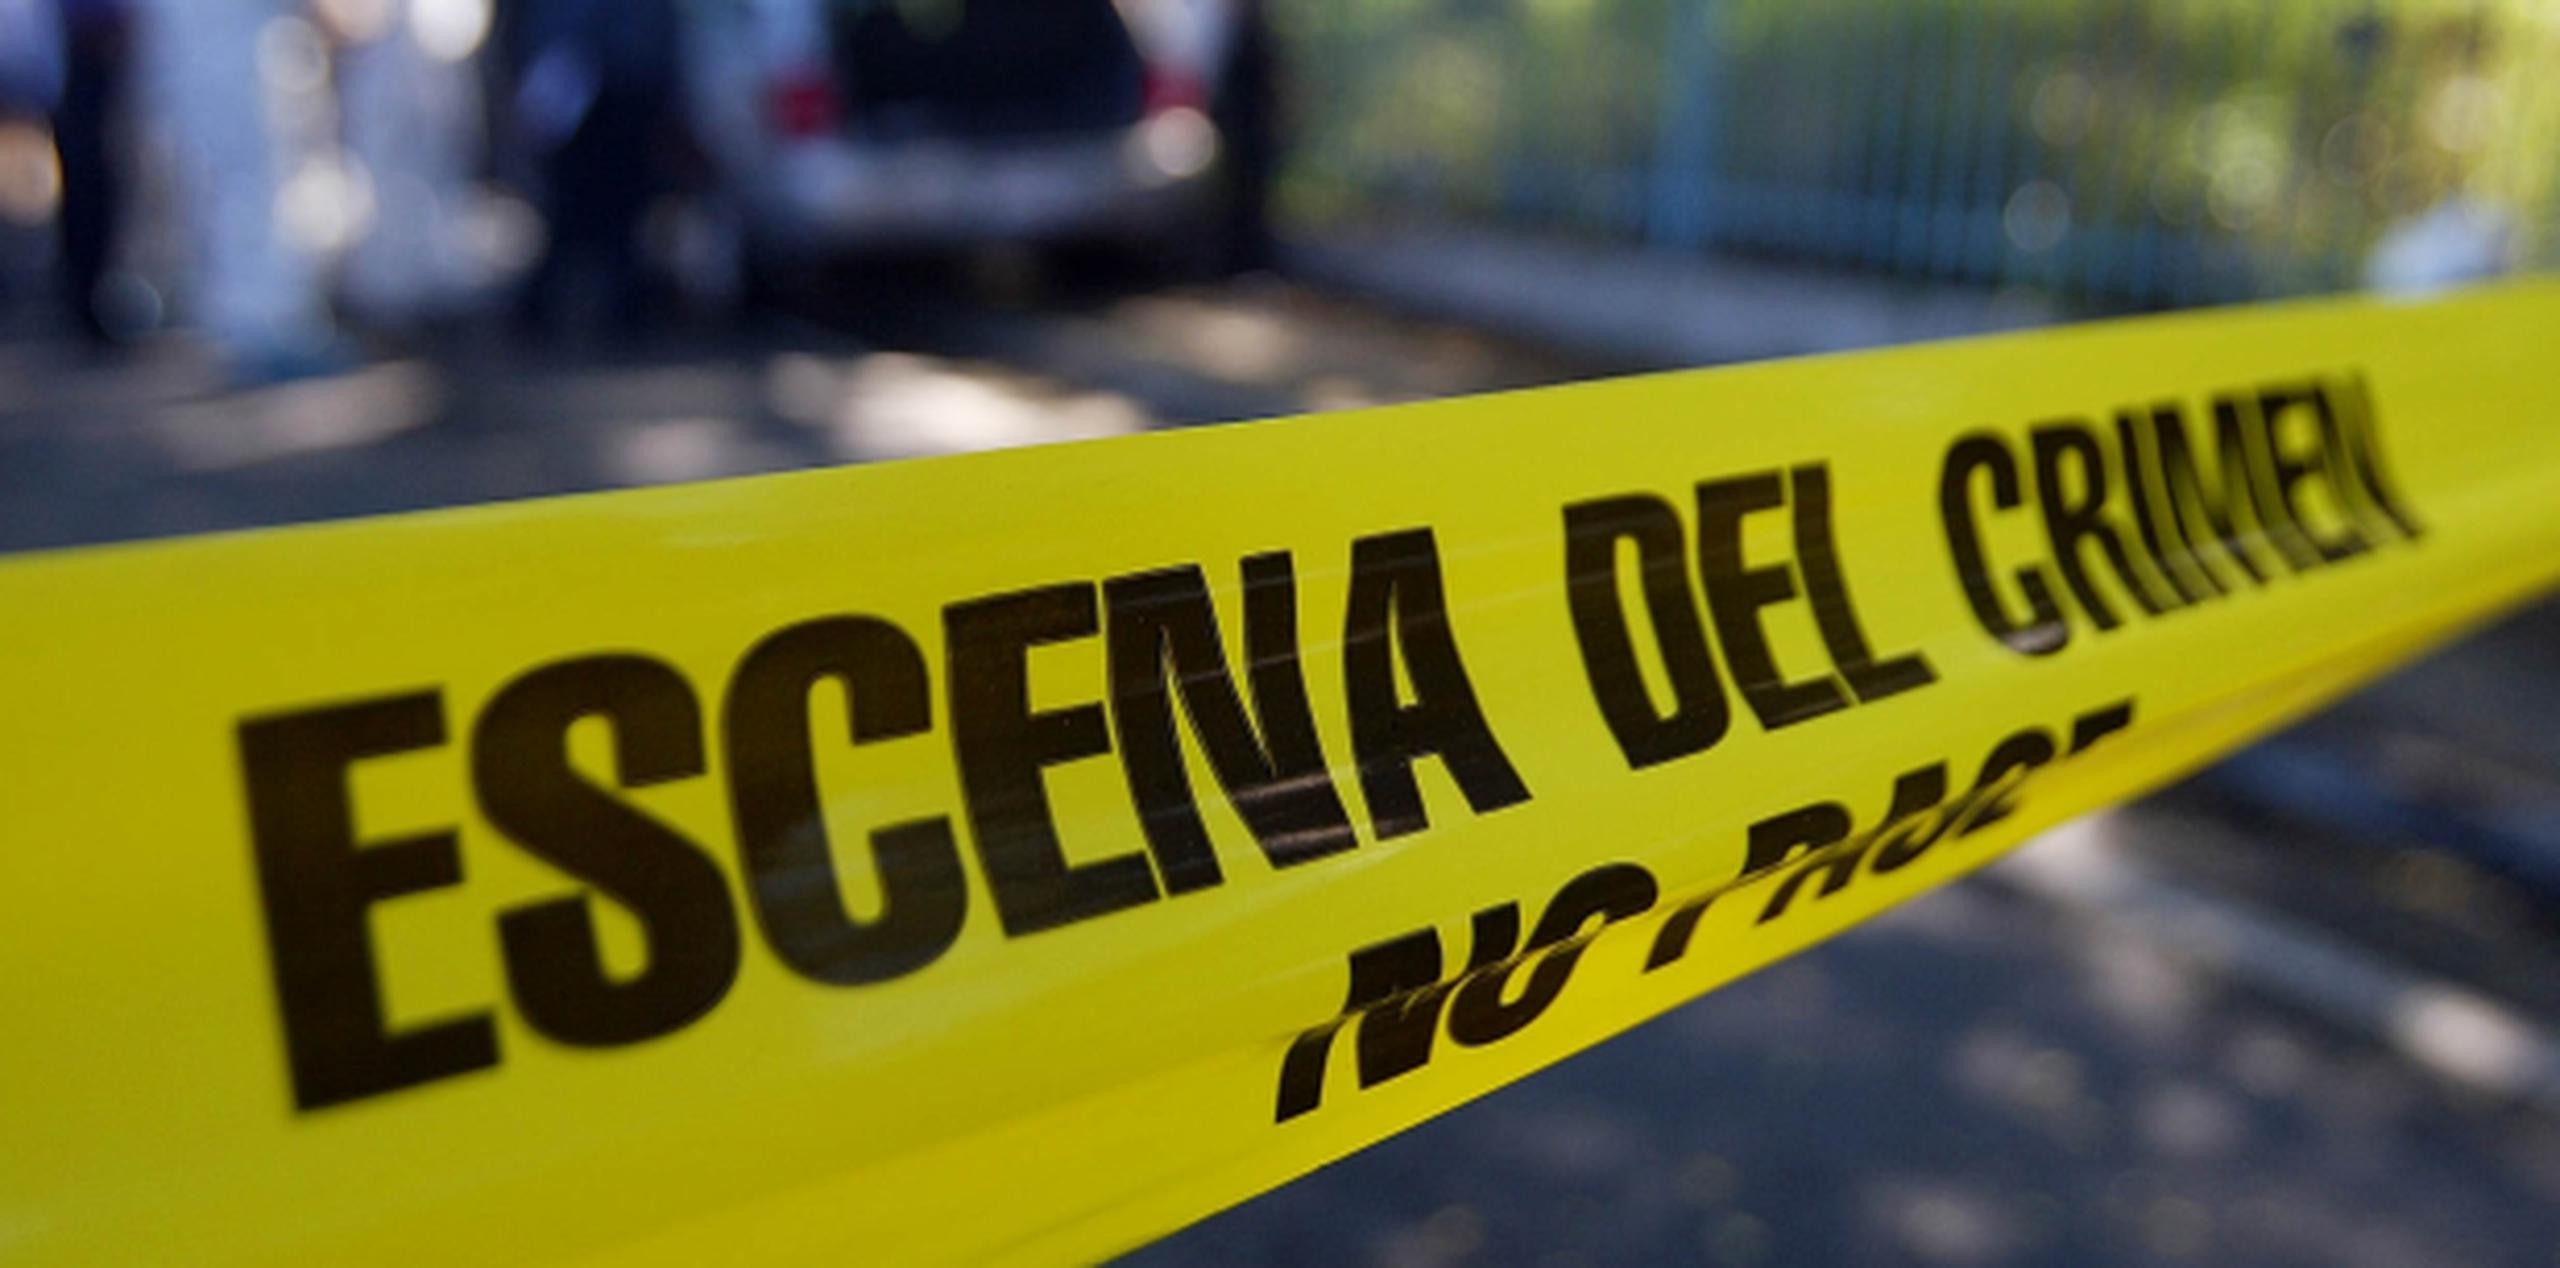 Este sería el octavo asesinato reportado durante el fin de semana ya que la Policía no contabilizó en sus estadísticas de hoy un doble asesinato ocurrido en la carretera PR-155 del sector La Pangola en Vega Baja. (Archivo)